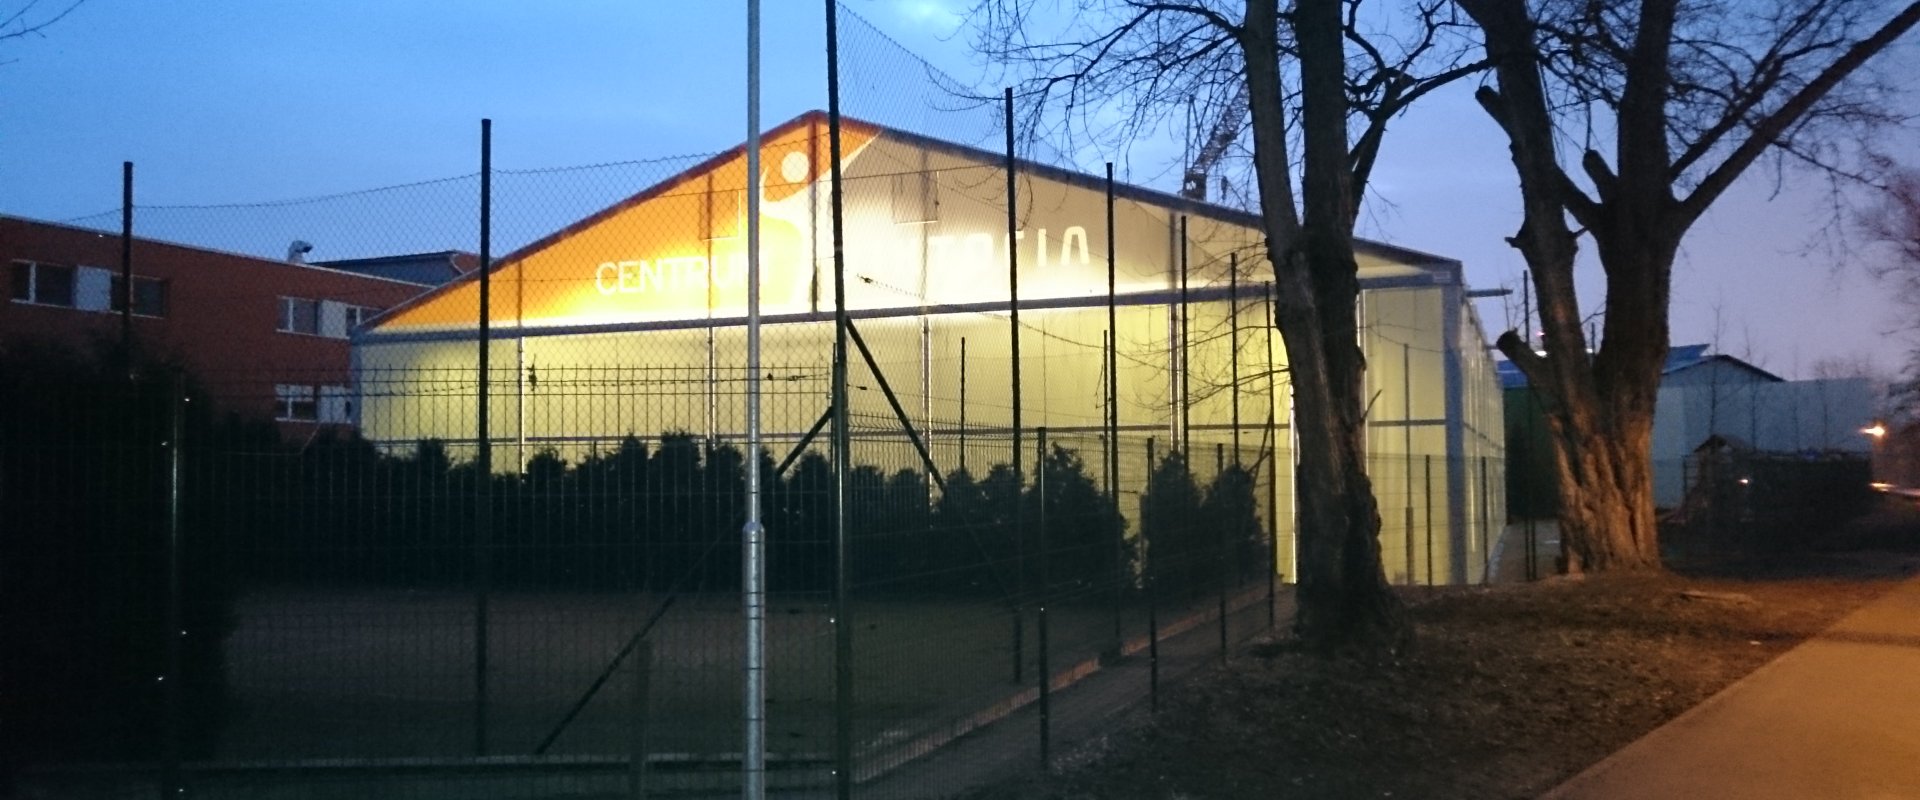 Sportovní hala v Brně